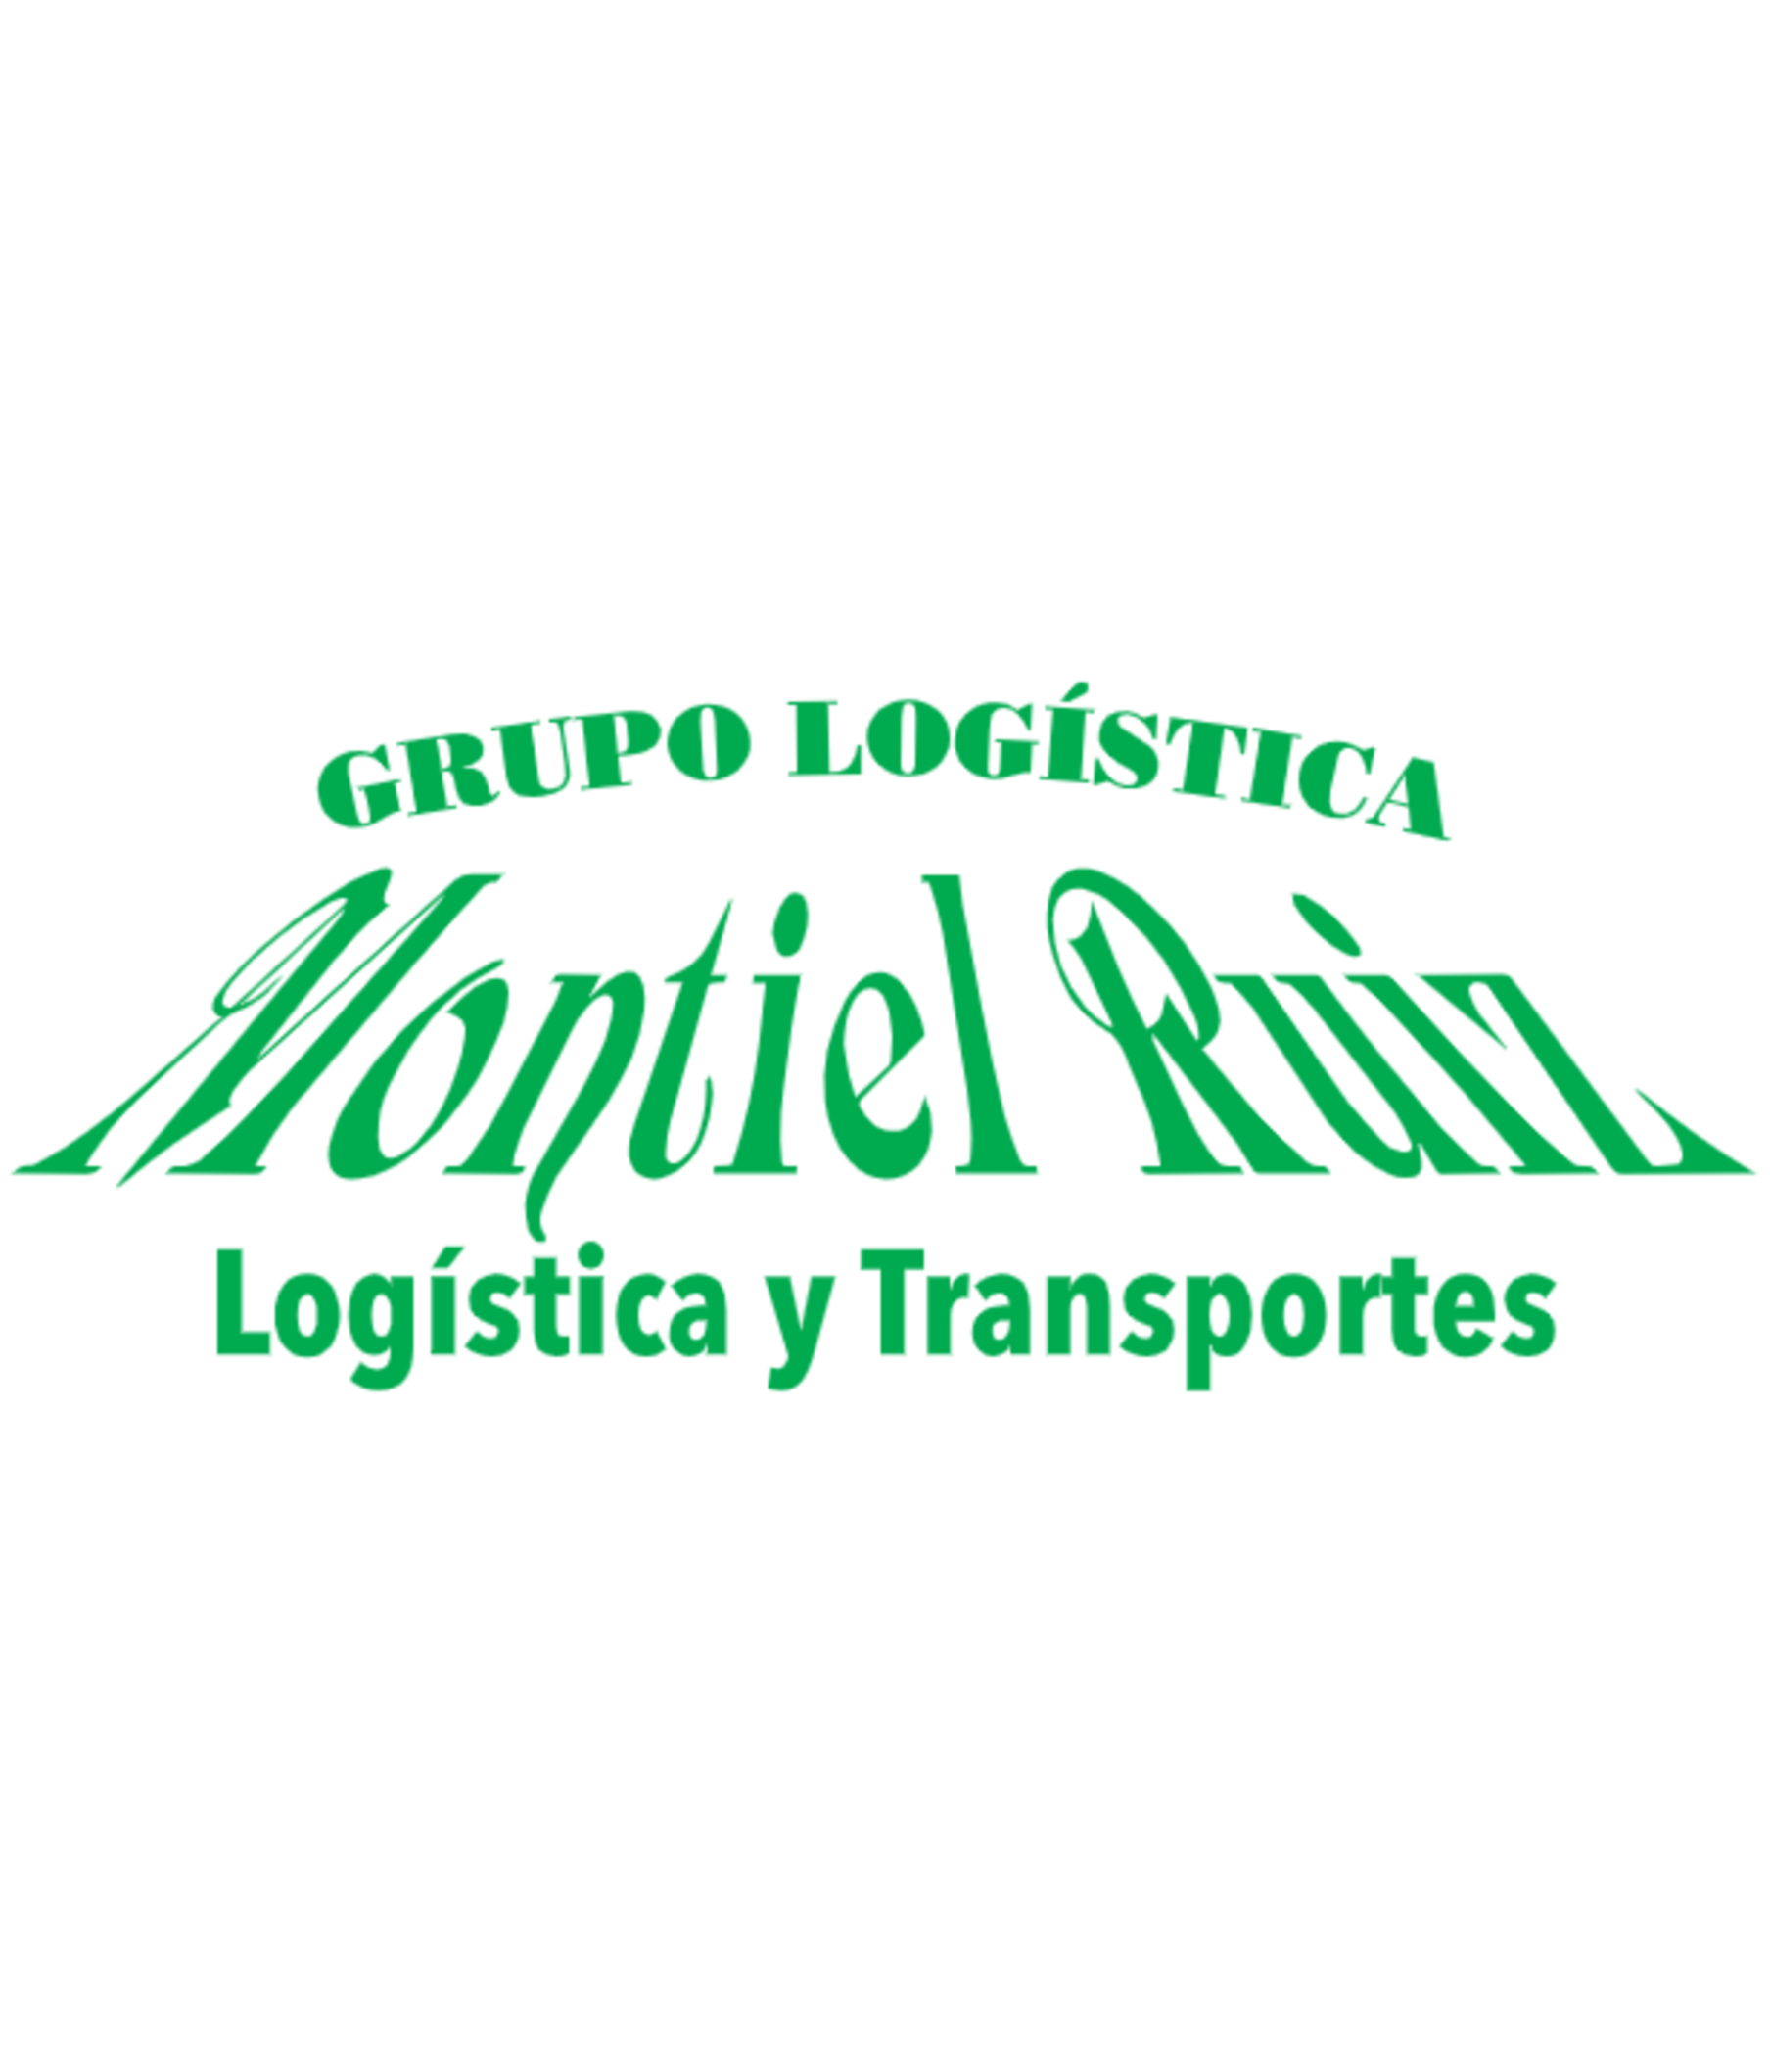 Logo de Grupo Logístico Montiel Ruiz S.L